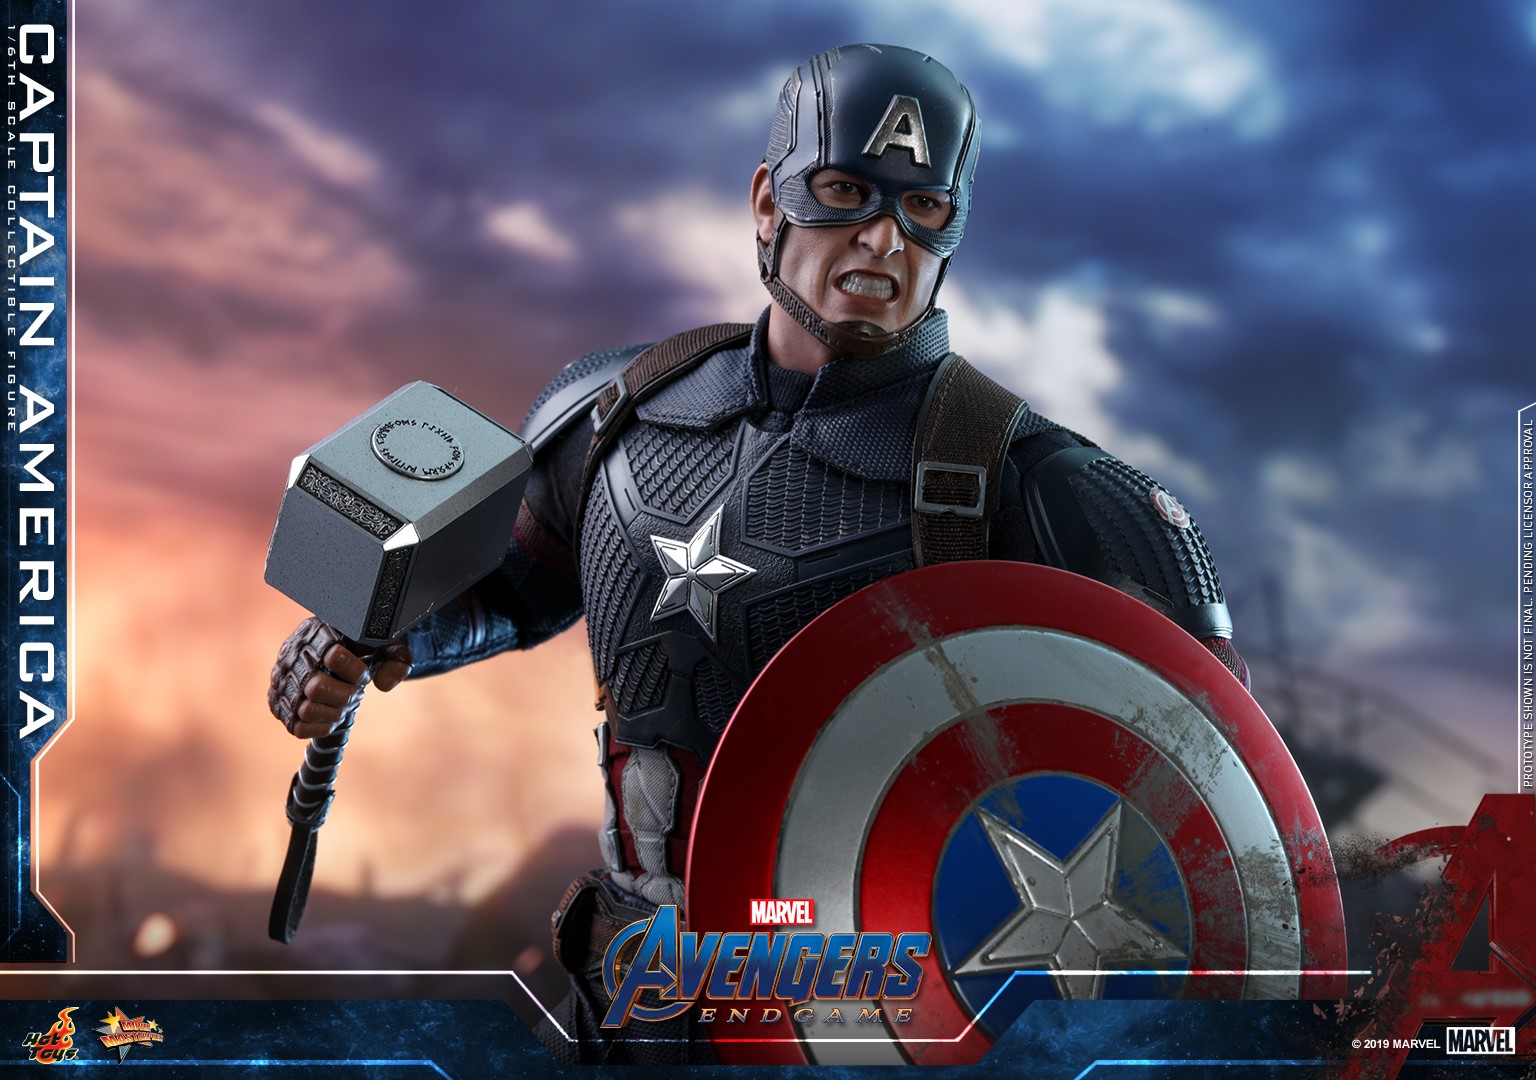 Hot-Toys-Avengers-Endgame-Captain-America-011.jpg